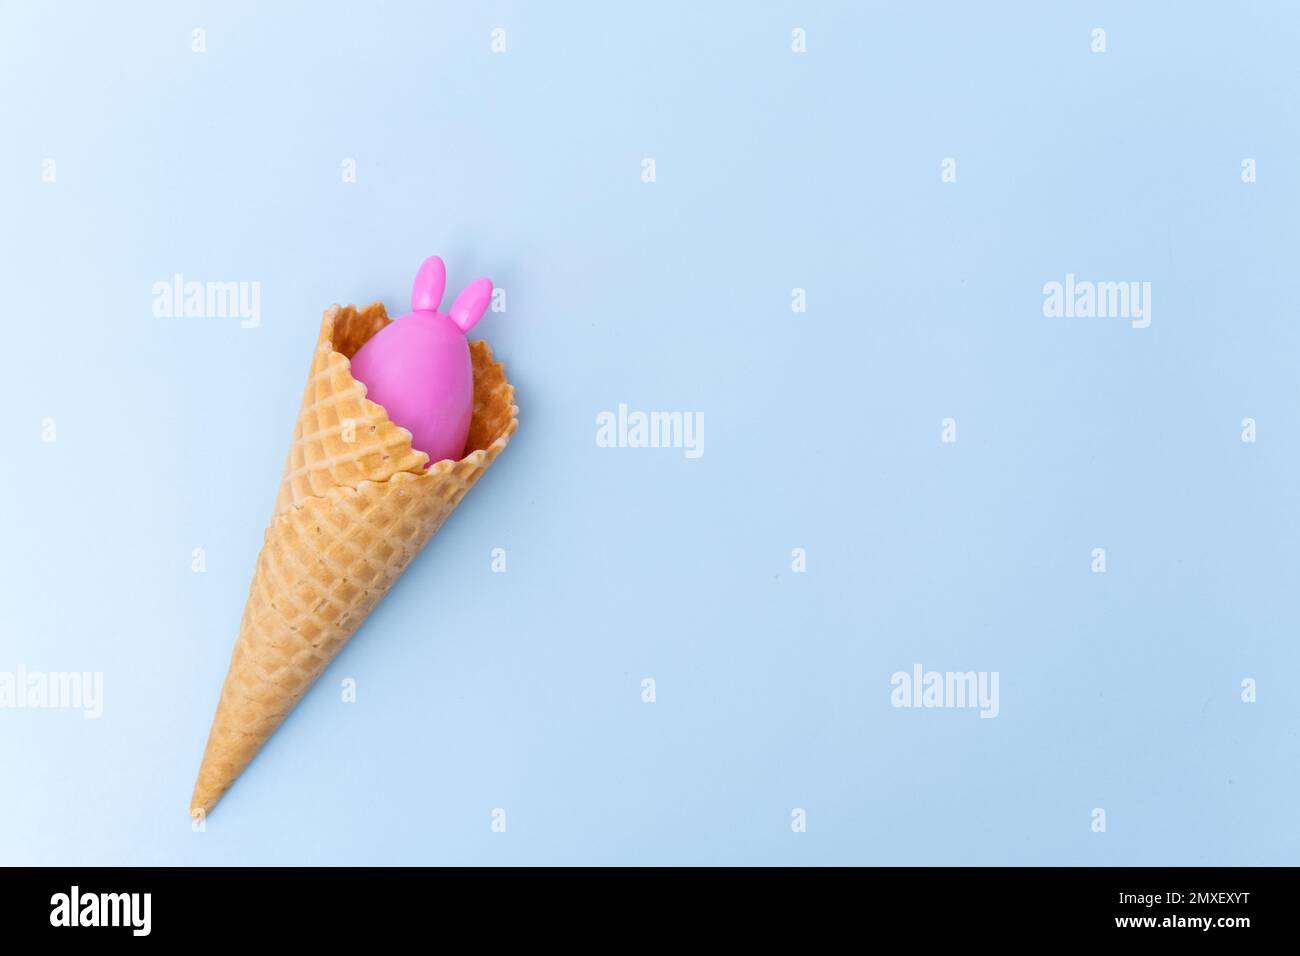 Un cornet de crème glacée gaufrée avec un œuf de Pâques rose caché avec des oreilles comme un lapin sur fond bleu, concept, espace de copie, plat. Pâques minimaliste gr Banque D'Images